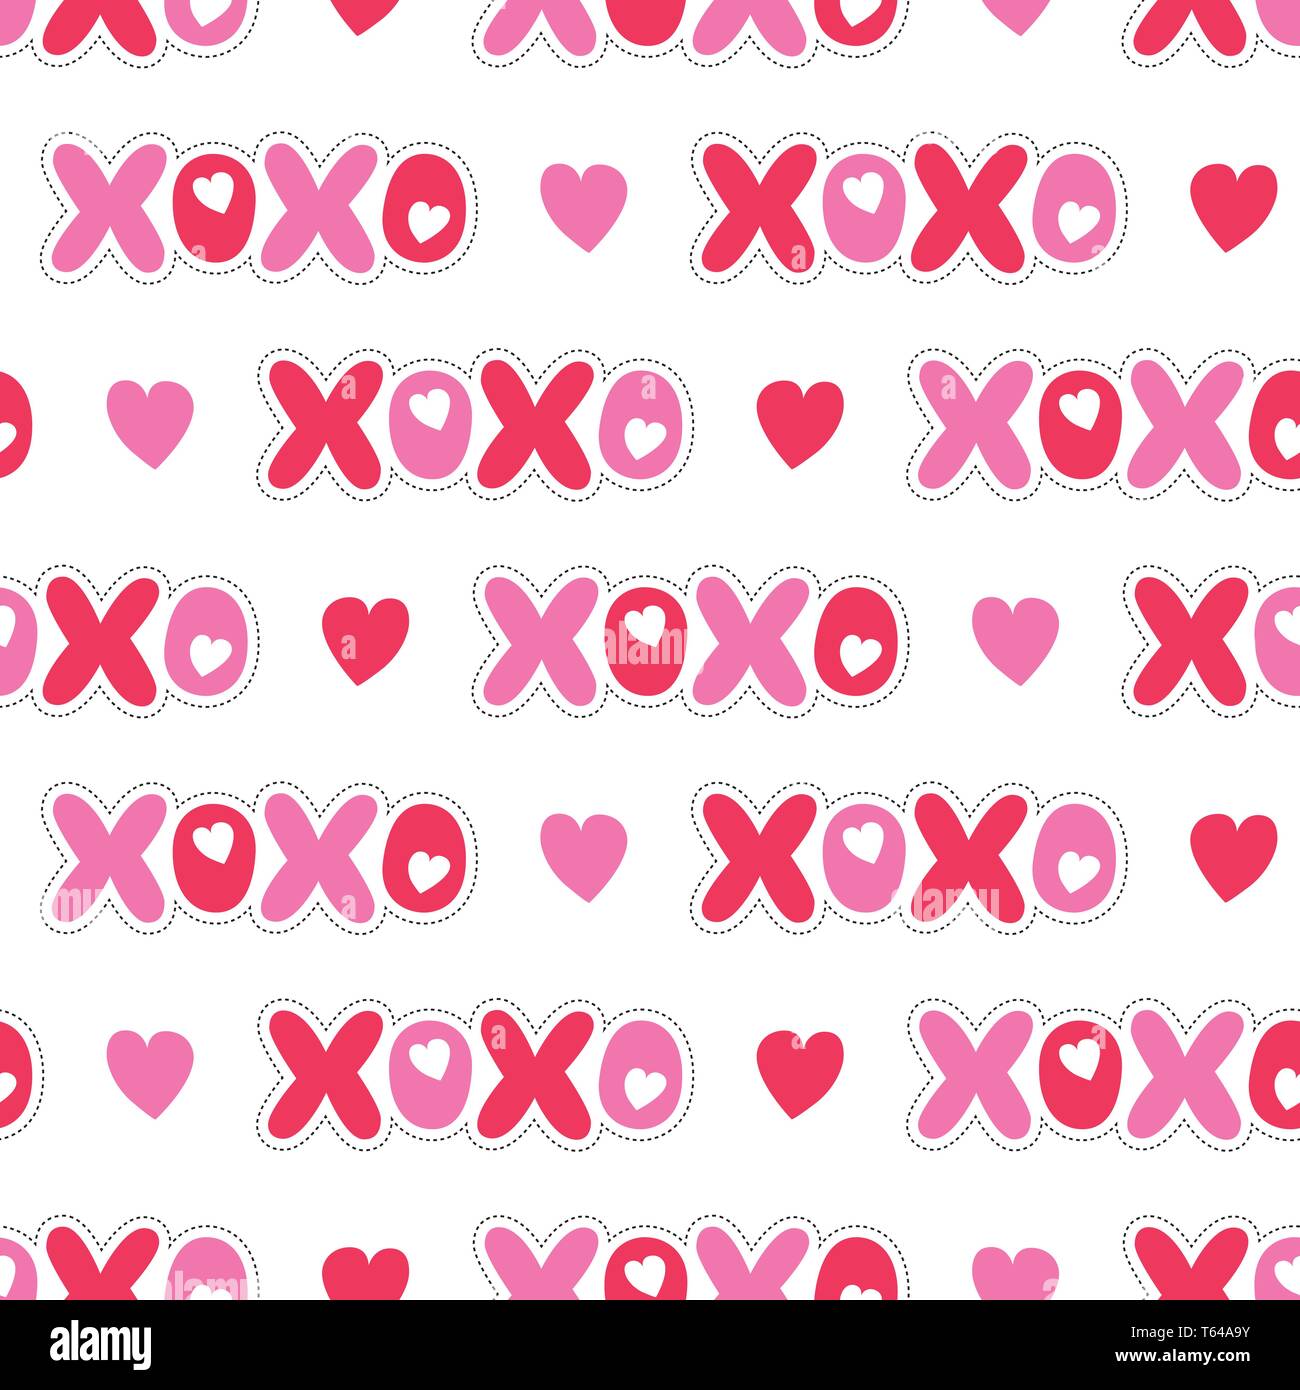 Đã sắp đến ngày Valentine rồi, bạn cần một mẫu hoa văn tính chất XOXO đơn giản để trang trí cho thiết kế của mình? Vector hình nền hồng sẽ mang đến cho bạn những mẫu template thiết kế với đường nét tinh tế, chi tiết trên từng chi tiết! Bạn không nên bỏ qua cơ hội này.